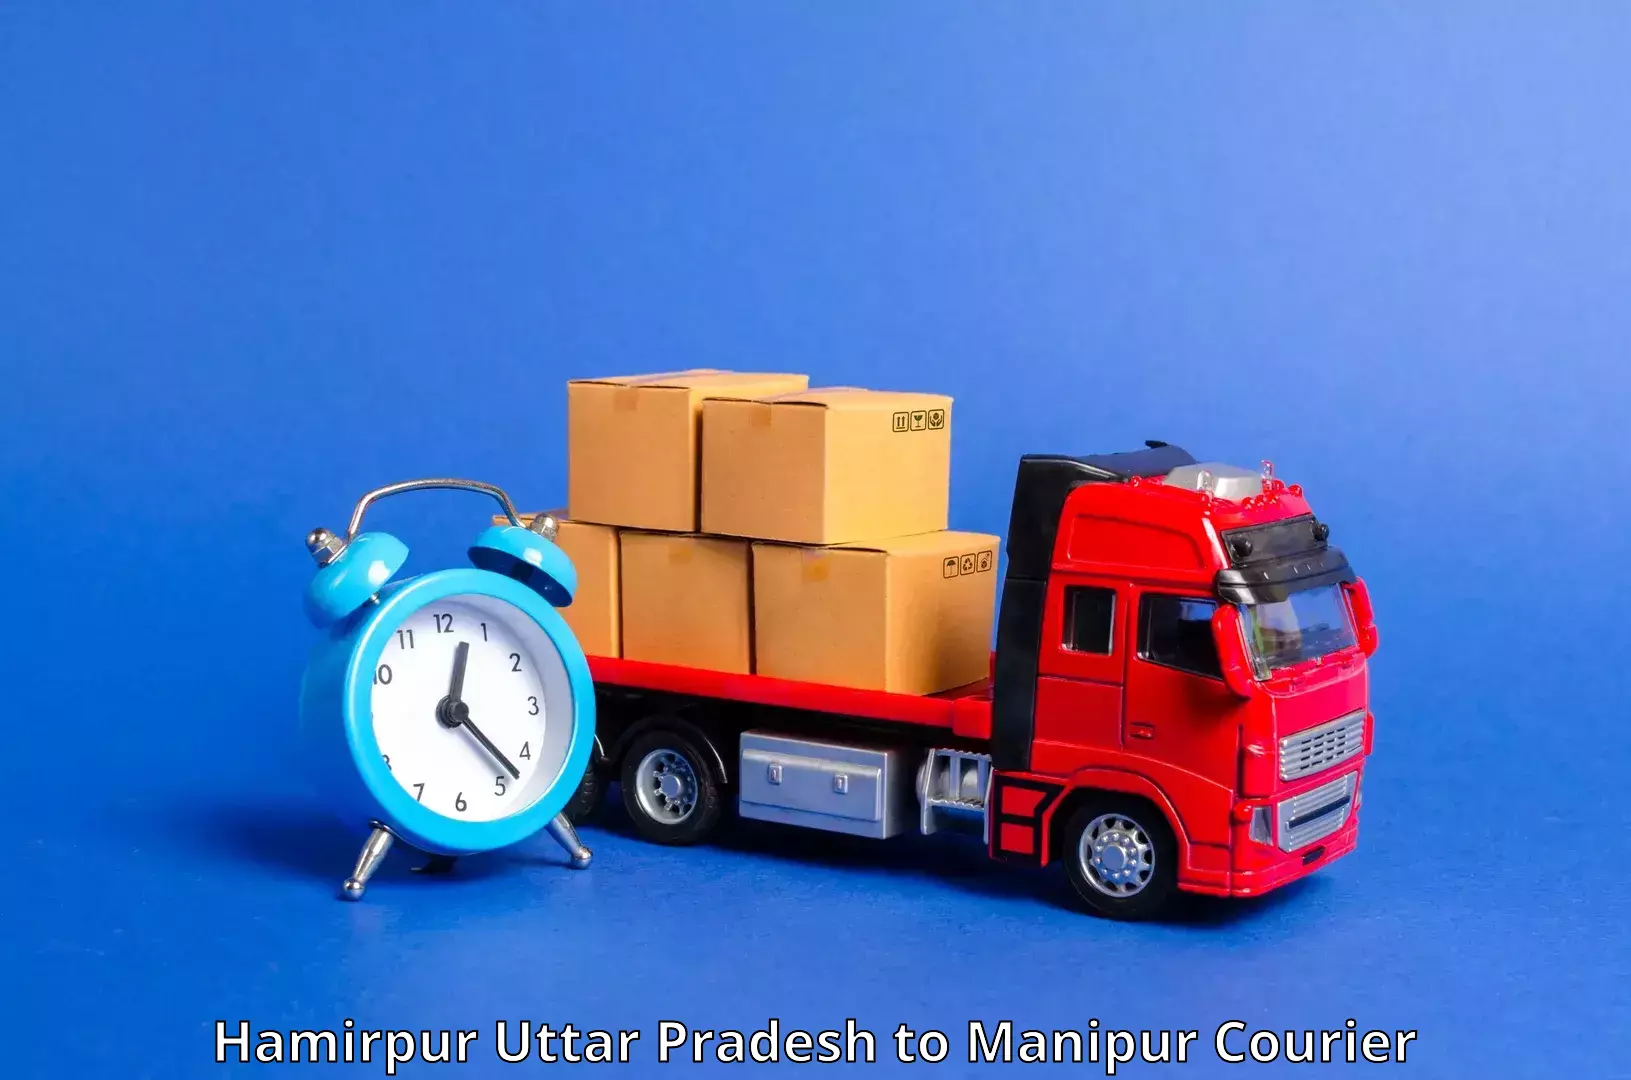 Efficient freight service Hamirpur Uttar Pradesh to Manipur